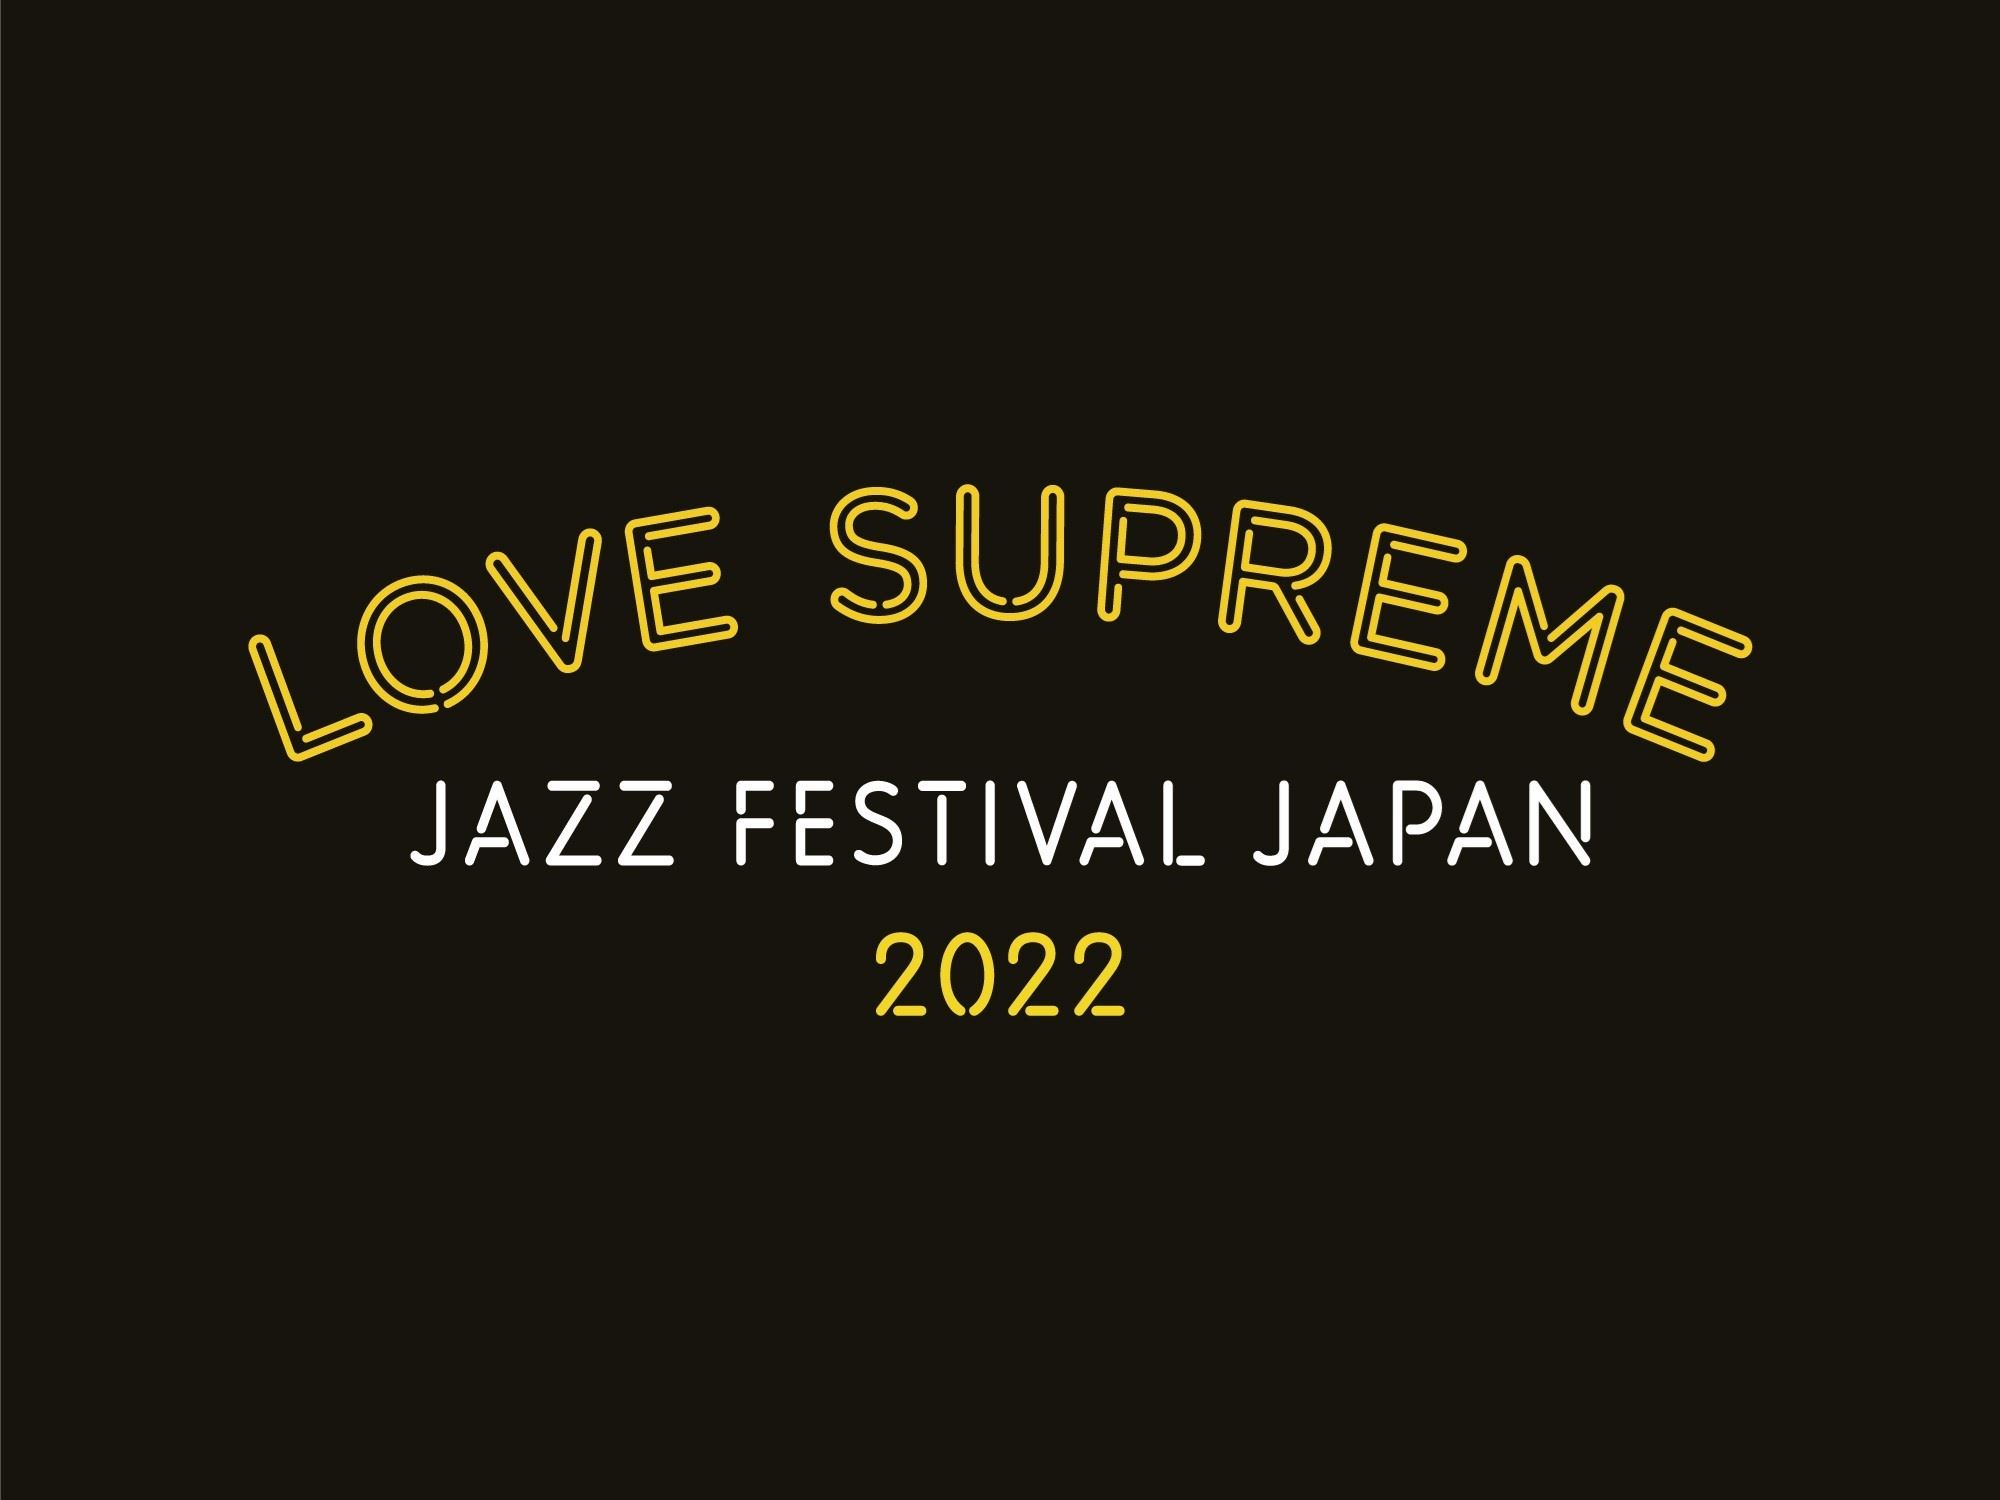 『LOVE SUPREME JAZZ FESTIVAL』ロゴ